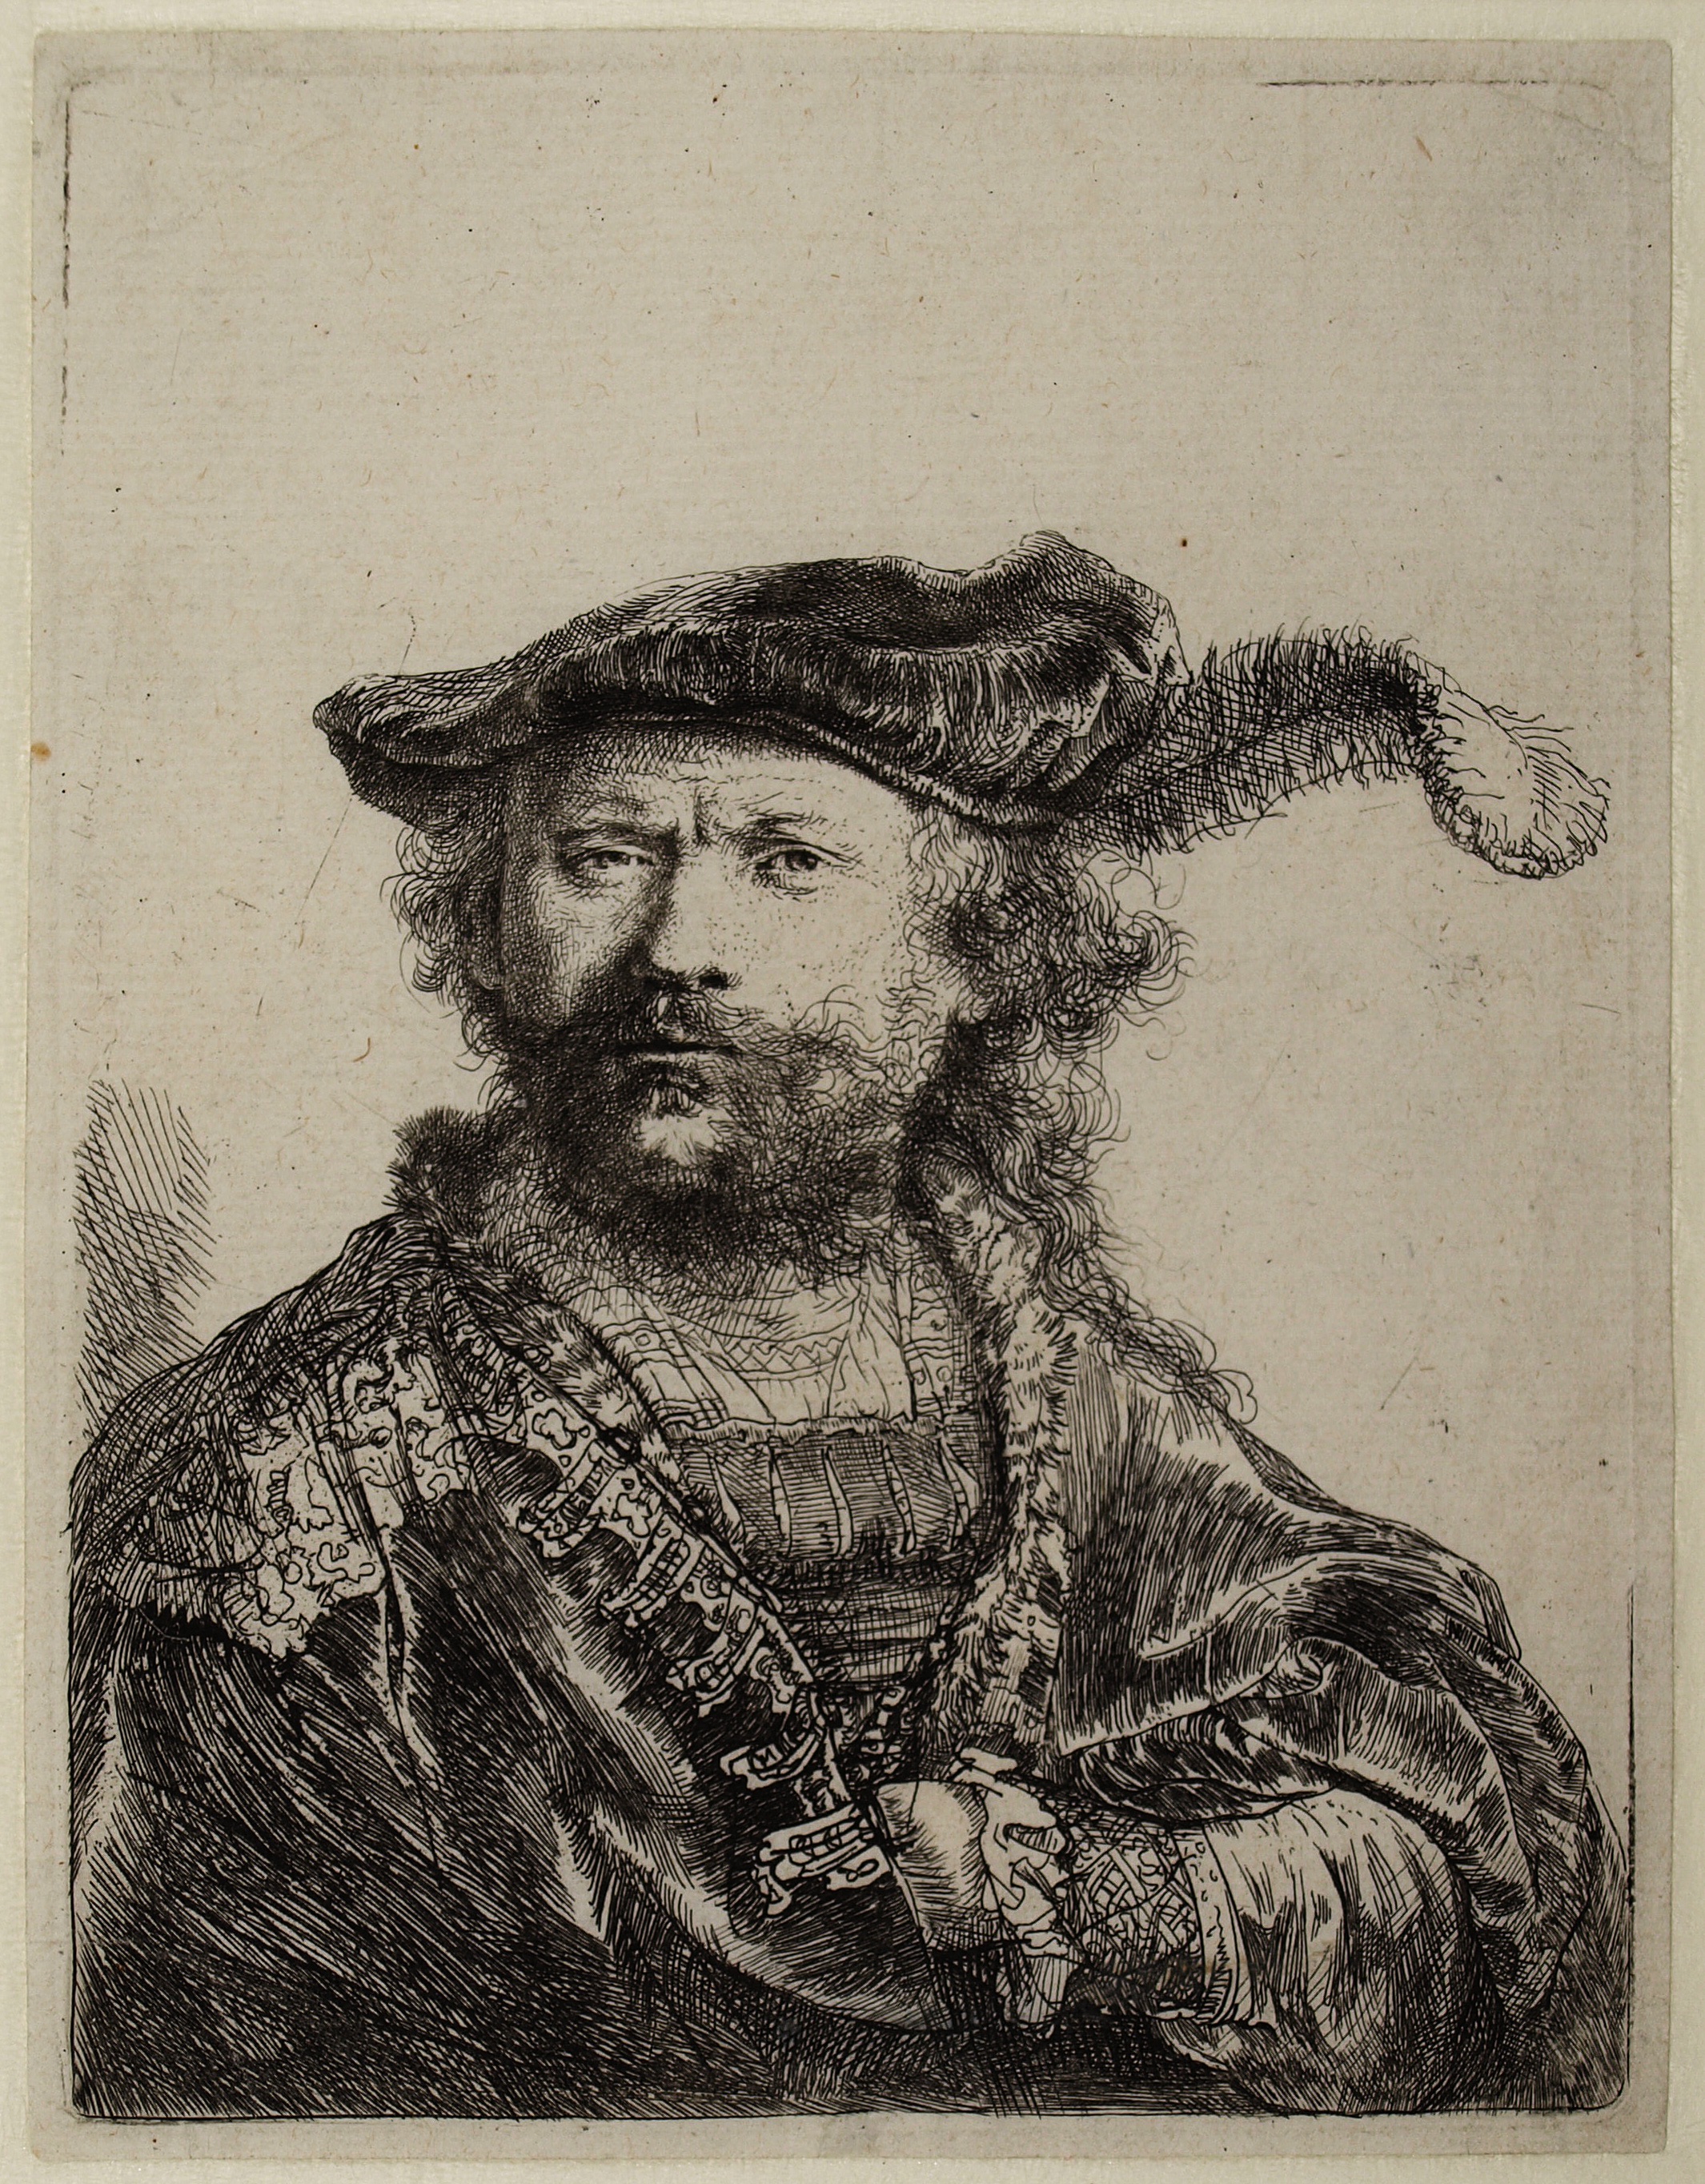 Autoportret w Aksamitnym Berecie z Piórem by Rembrandt van Rijn - 1638 